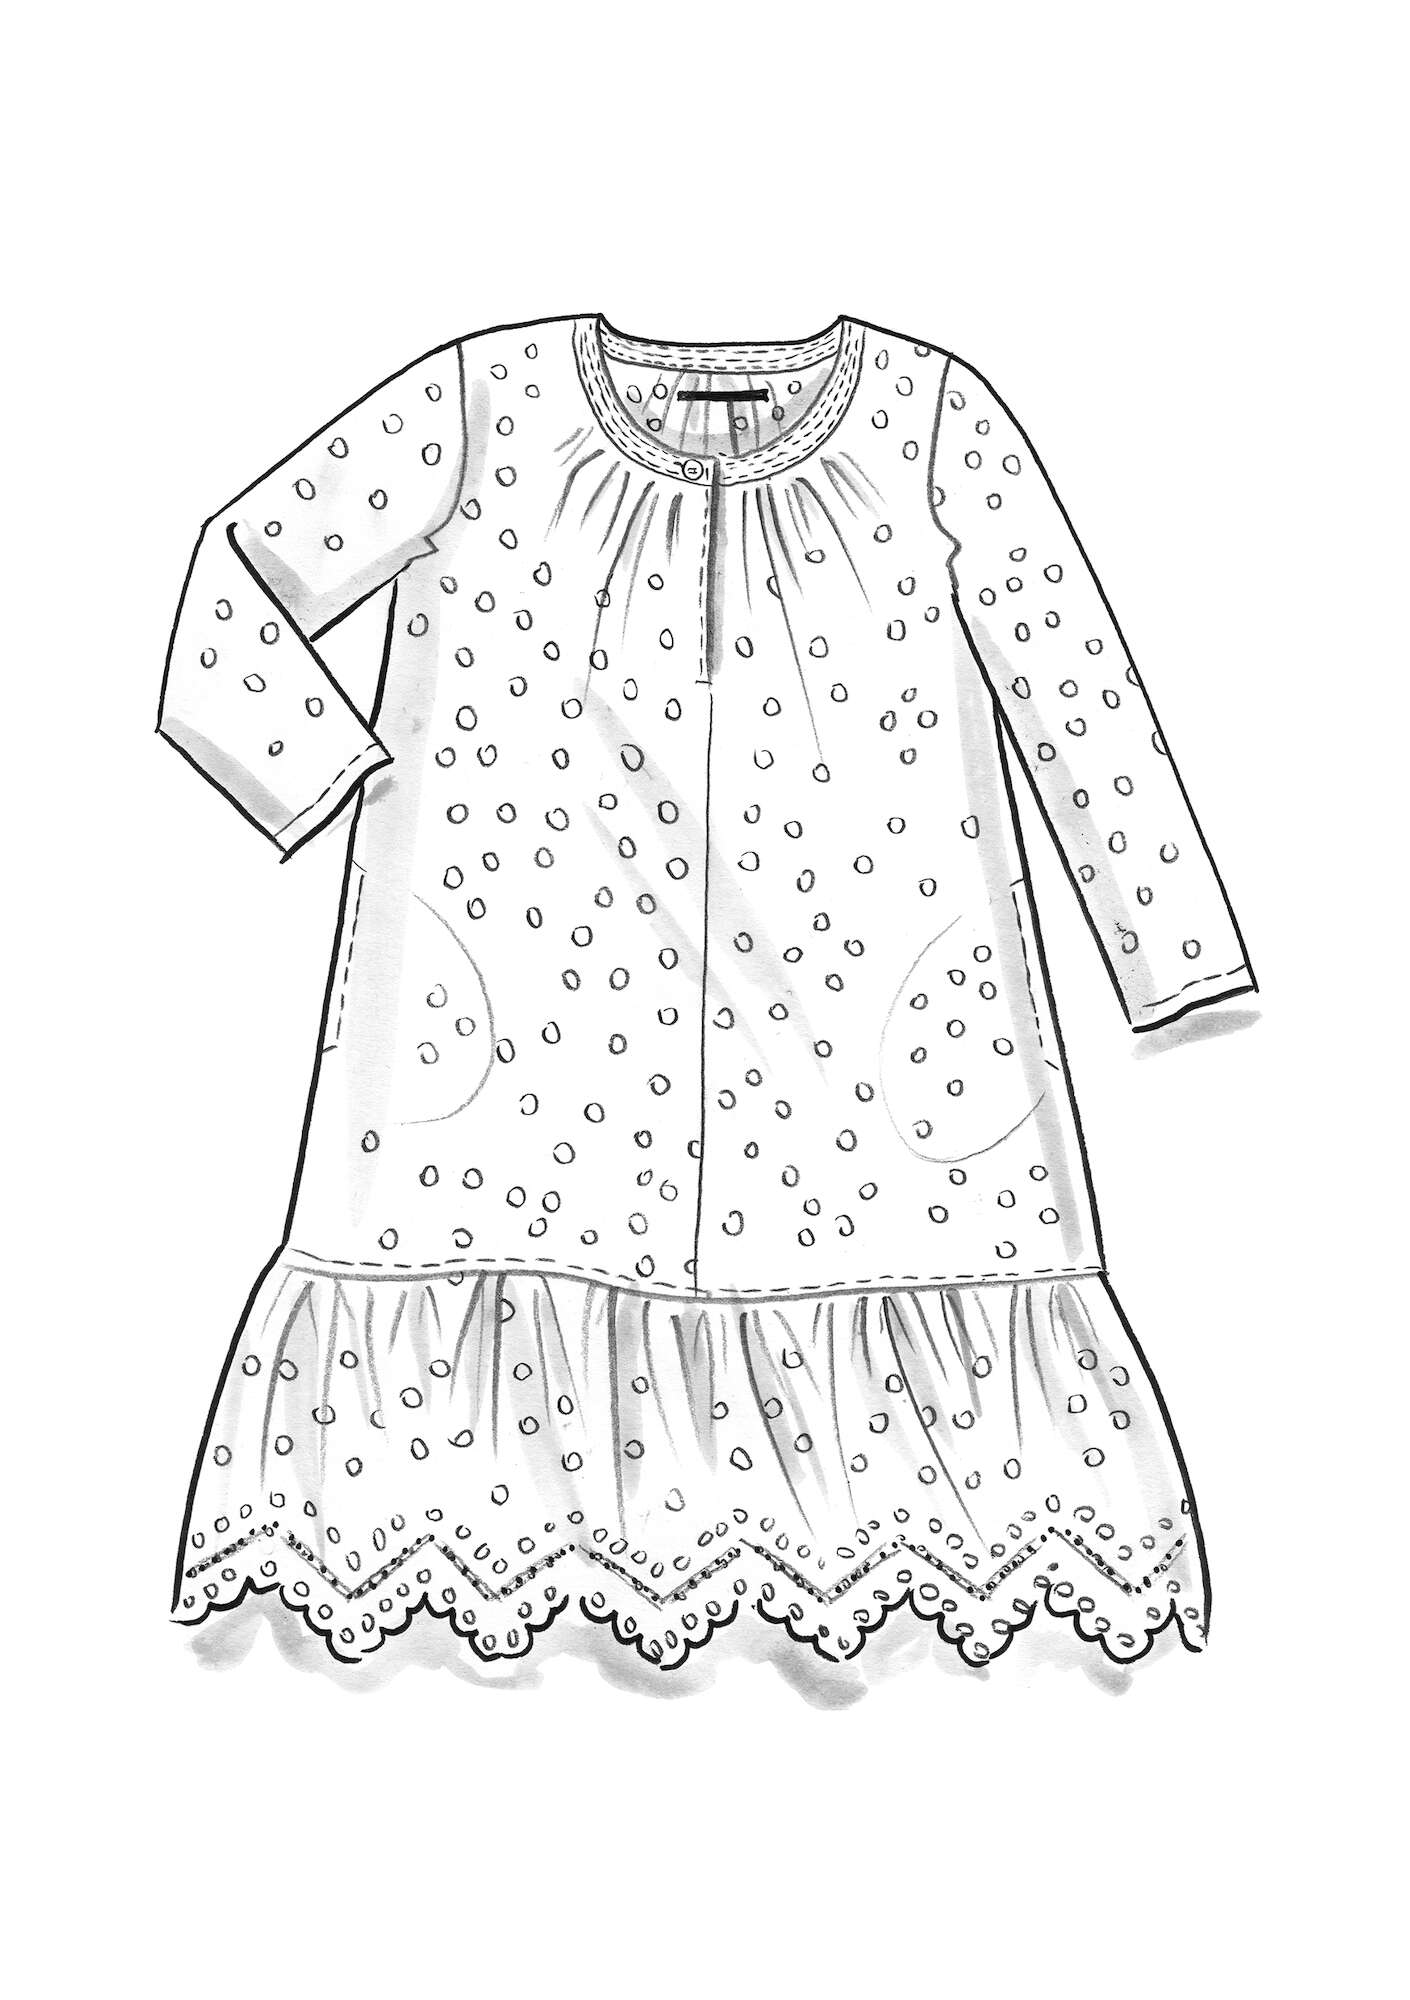 Vevd kjole «Lilly» i økologisk bomull halvbleket